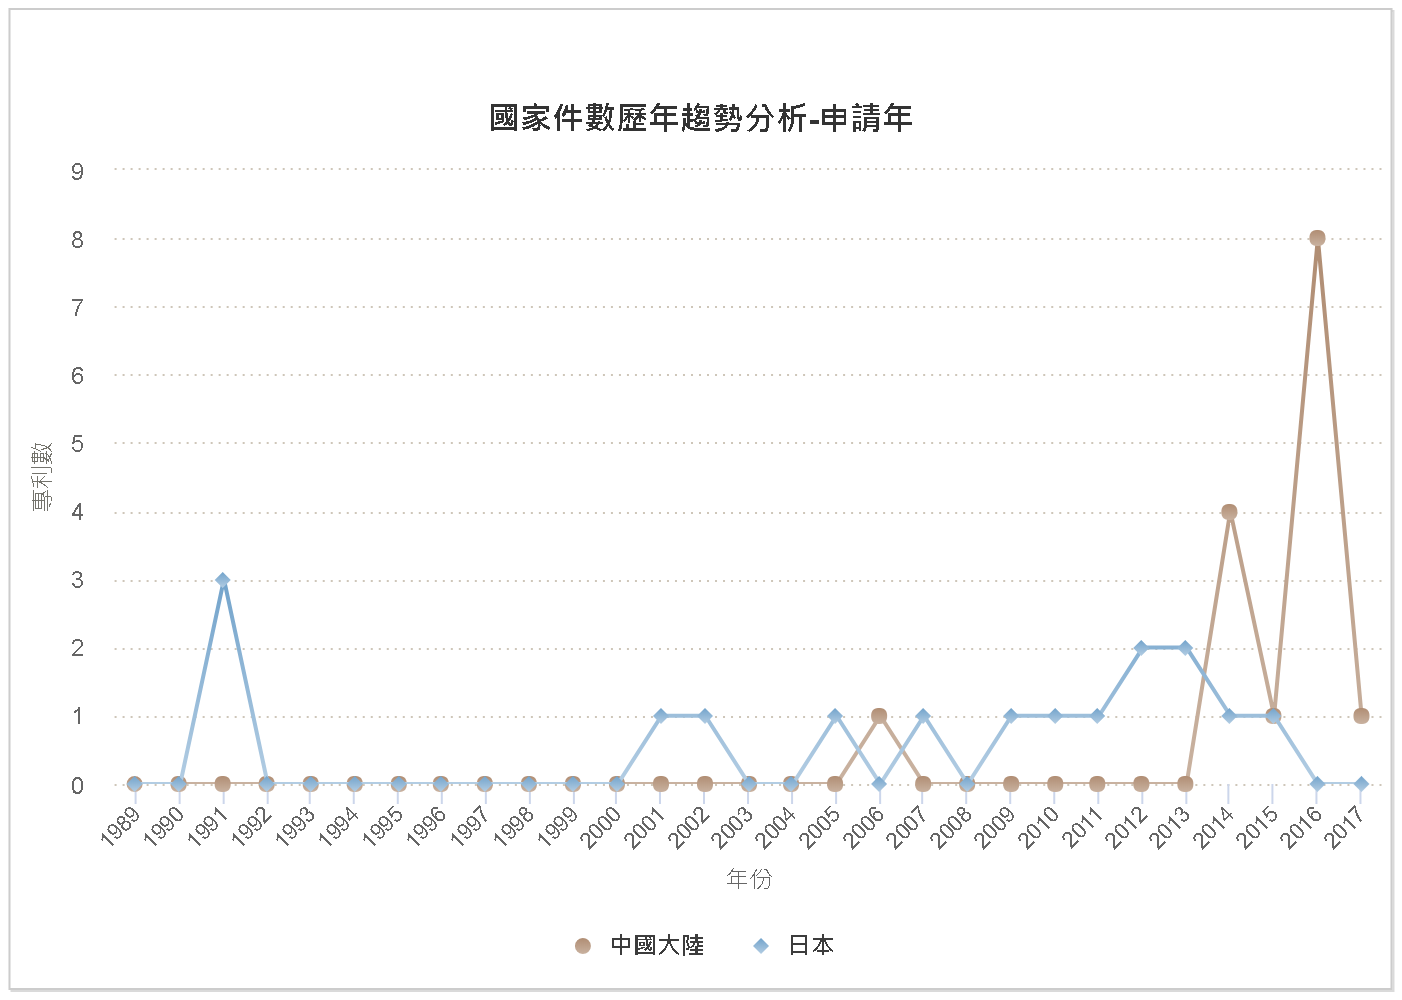 國家件數歷年趨勢分析圖–臺灣(中國大陸、日本)